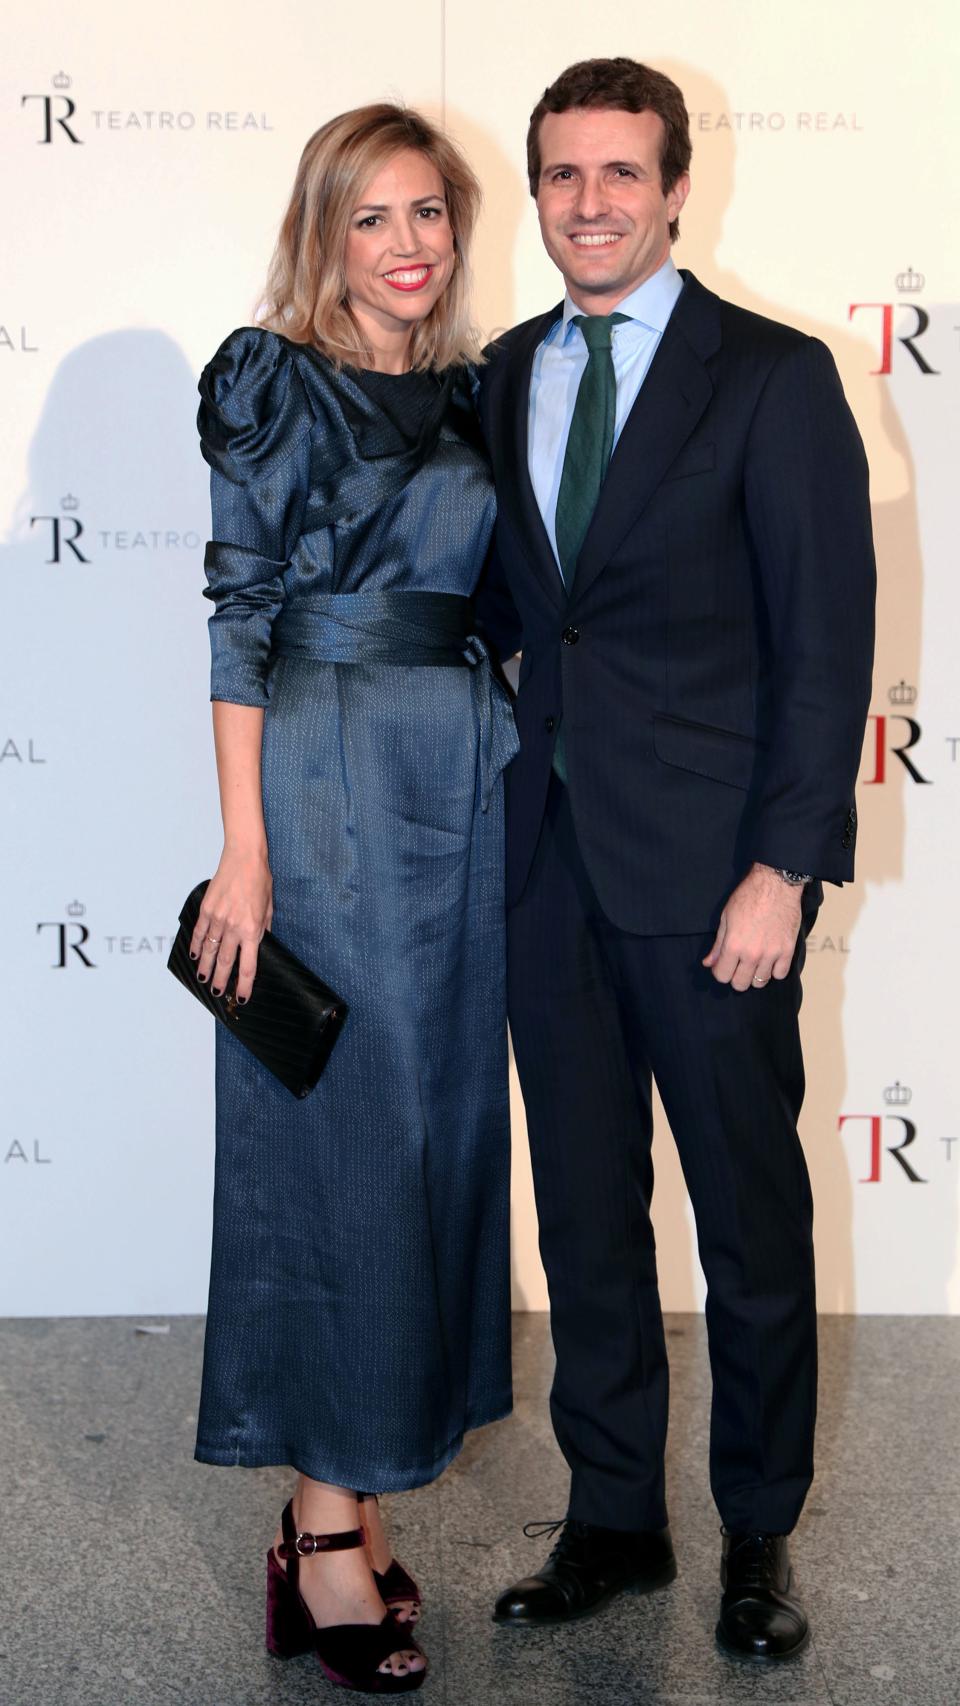 Isabel Torres y Pablo Casado en la Gala 2018 del Teatro Real.